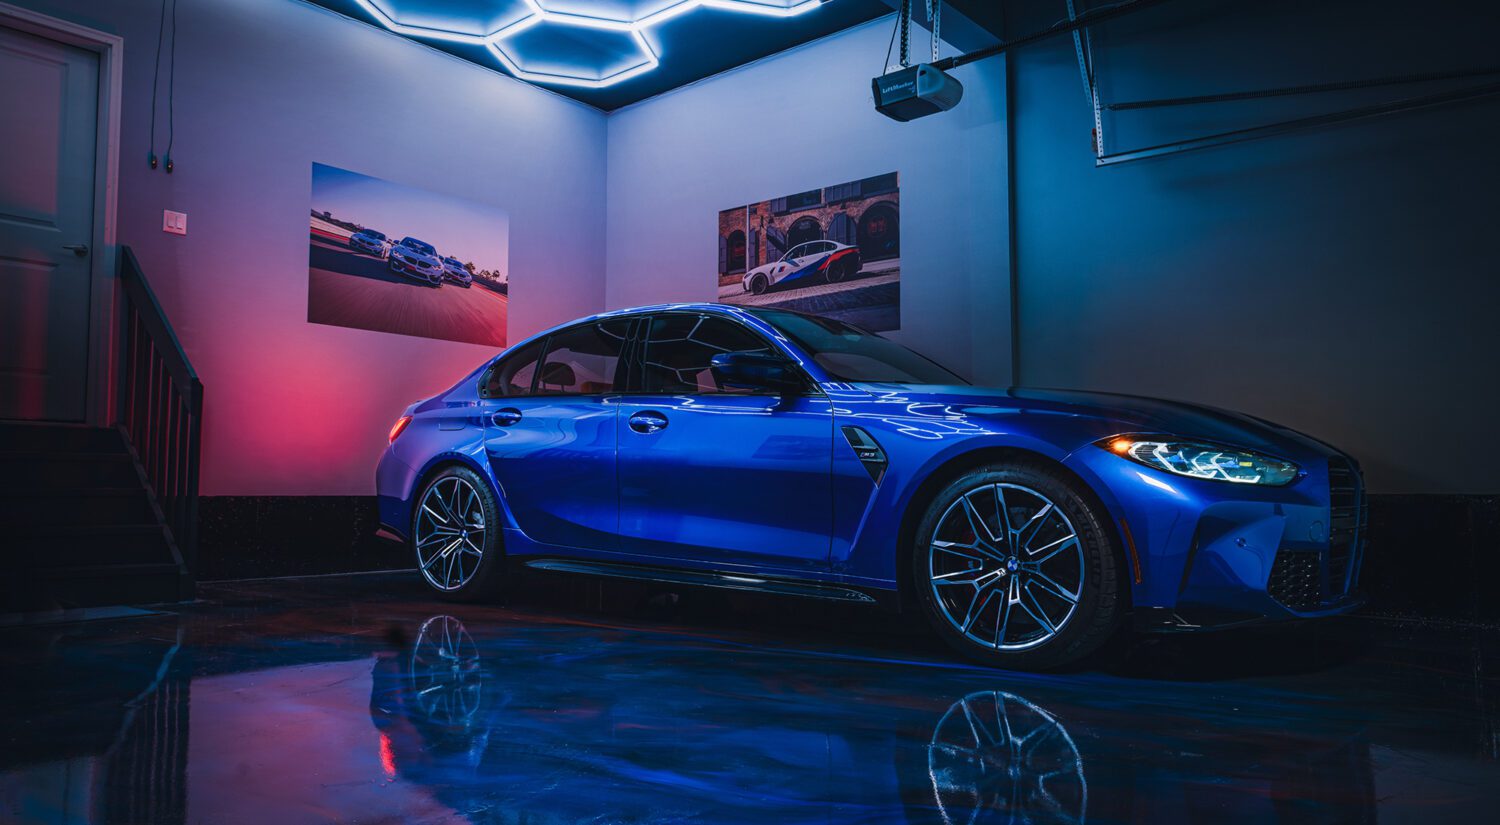 How to build a dream BMW garage